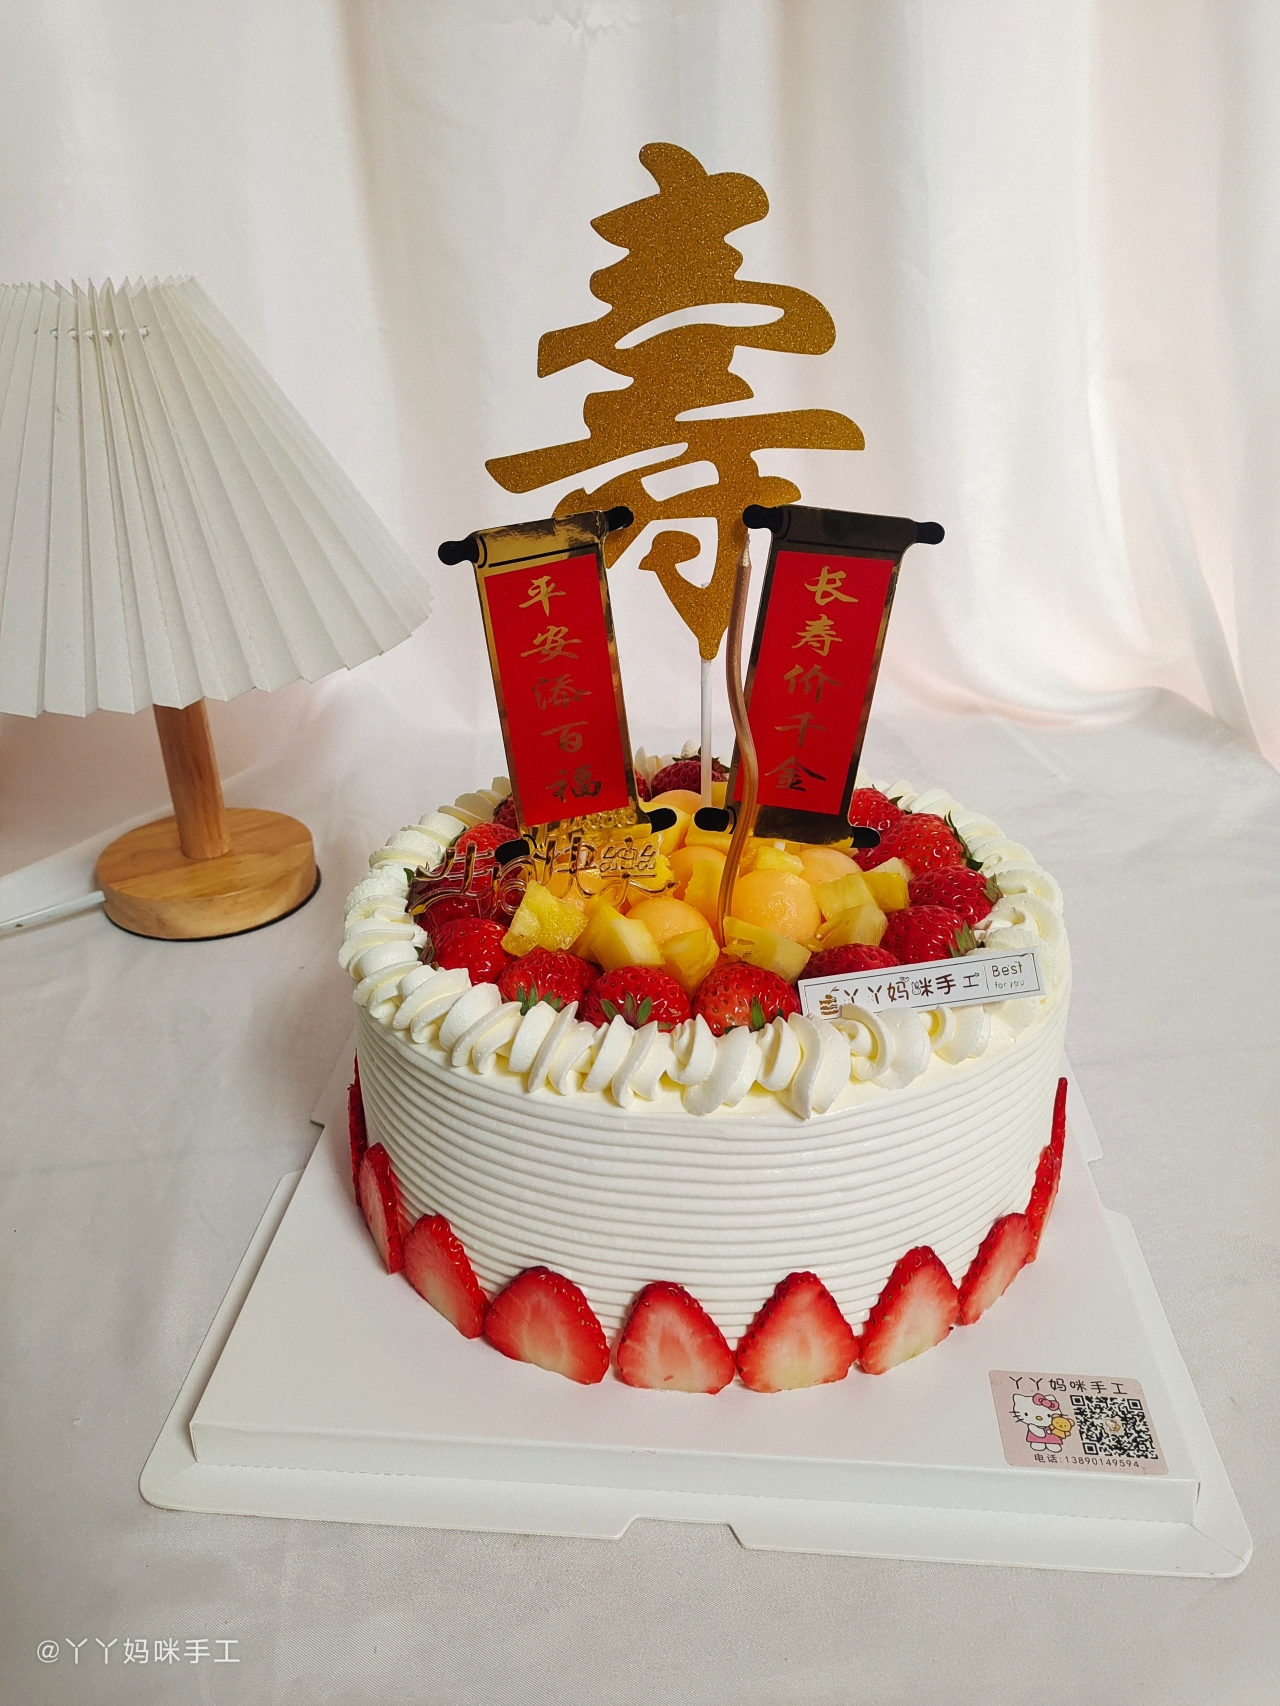 生日蛋糕—戚风六寸(高比克风炉版)